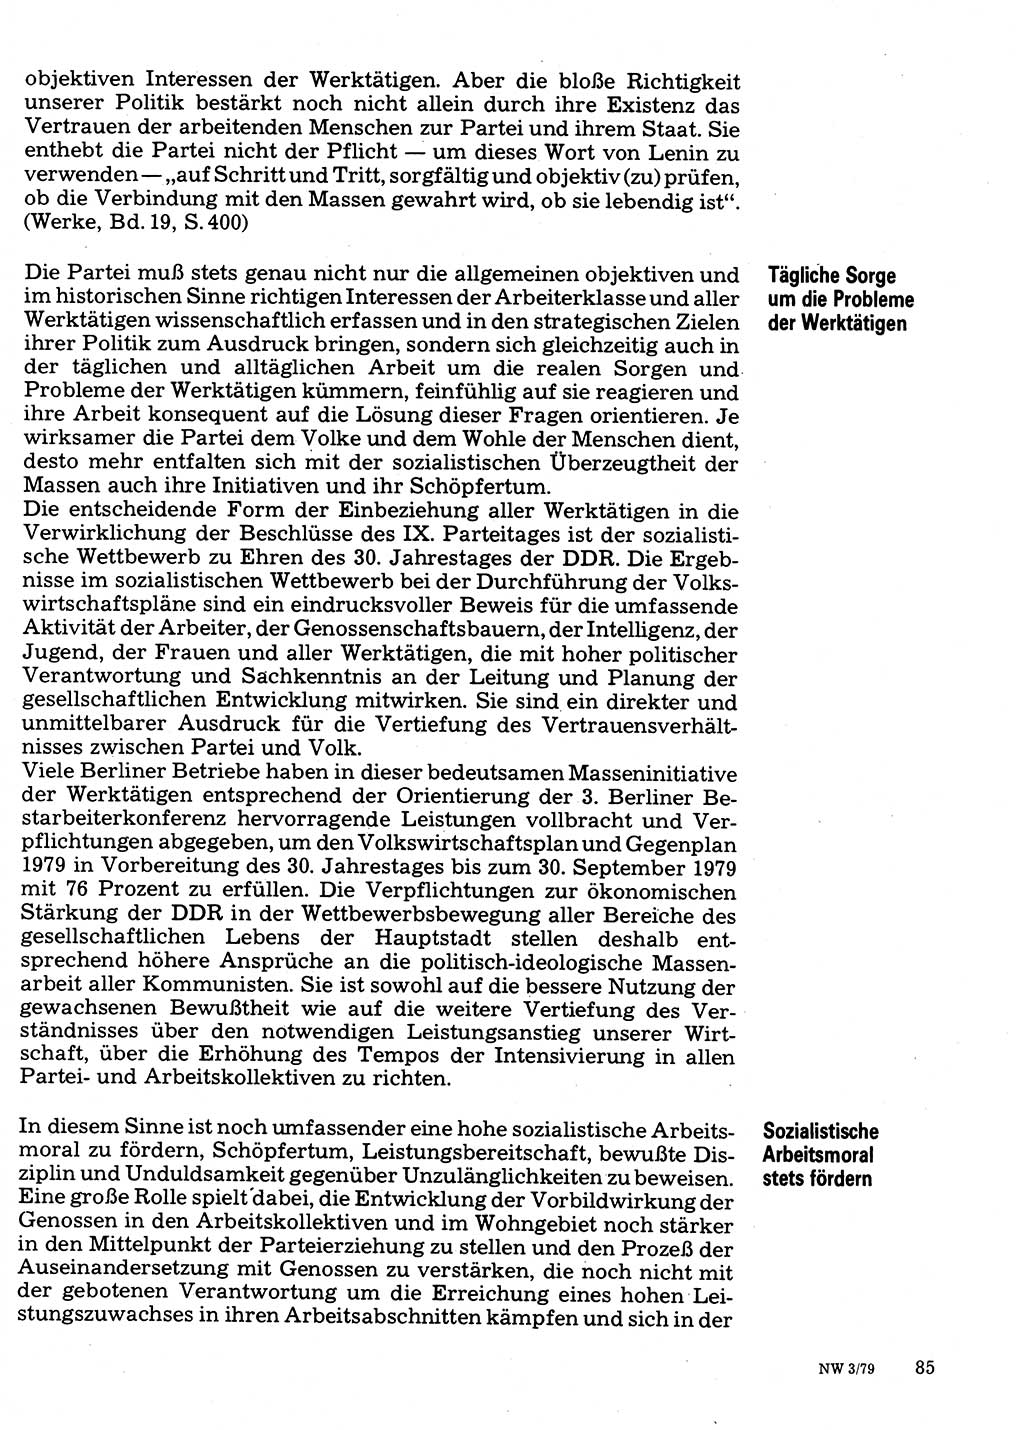 Neuer Weg (NW), Organ des Zentralkomitees (ZK) der SED (Sozialistische Einheitspartei Deutschlands) für Fragen des Parteilebens, 34. Jahrgang [Deutsche Demokratische Republik (DDR)] 1979, Seite 85 (NW ZK SED DDR 1979, S. 85)